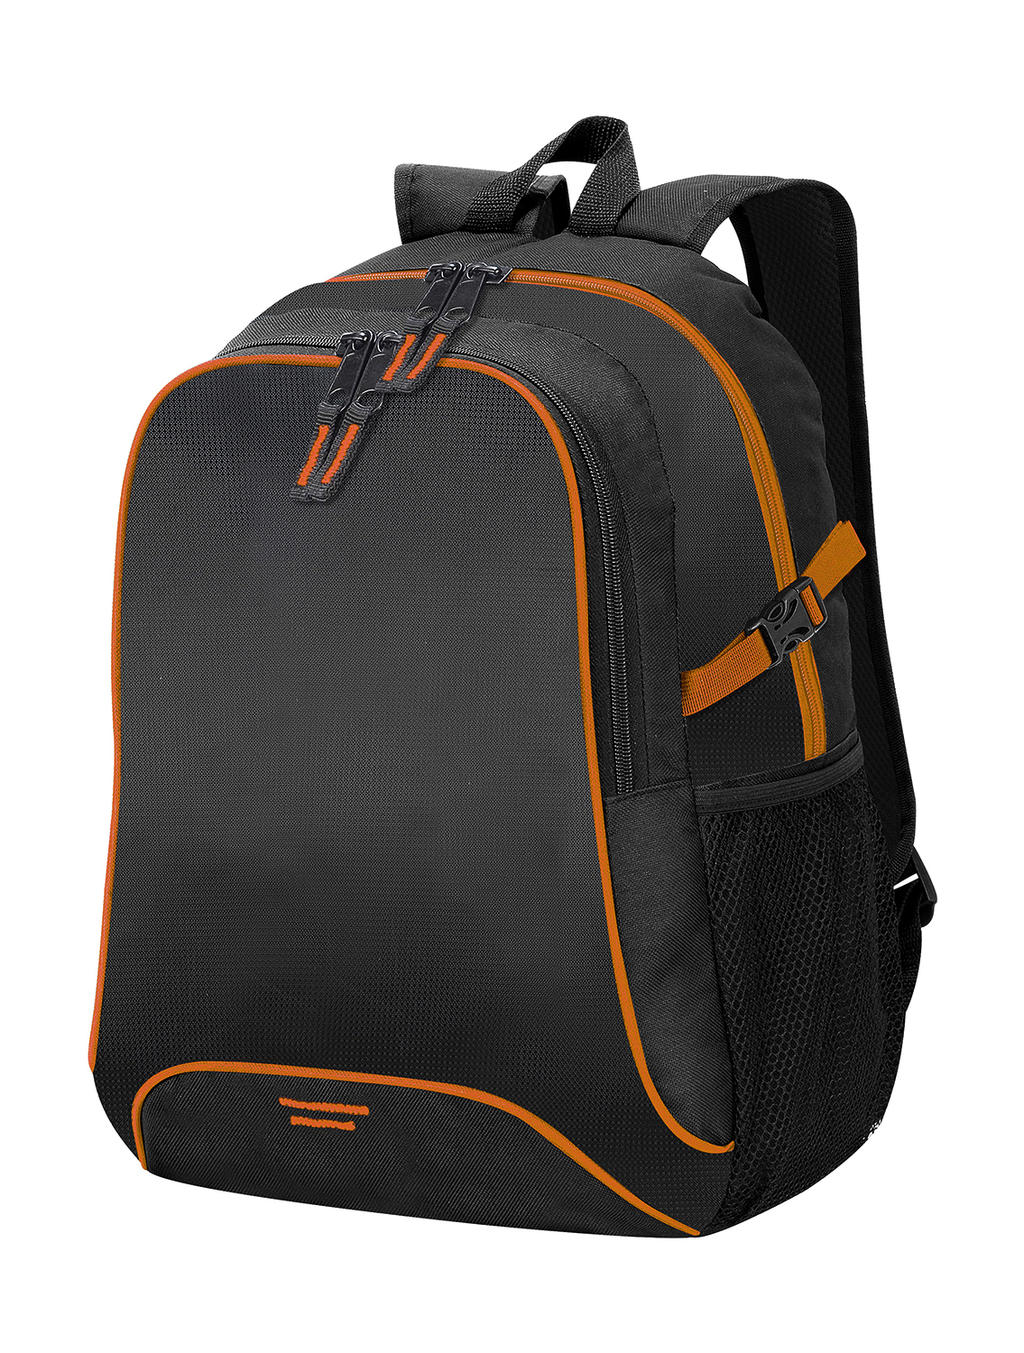  Osaka Basic Backpack in Farbe Black/Orange